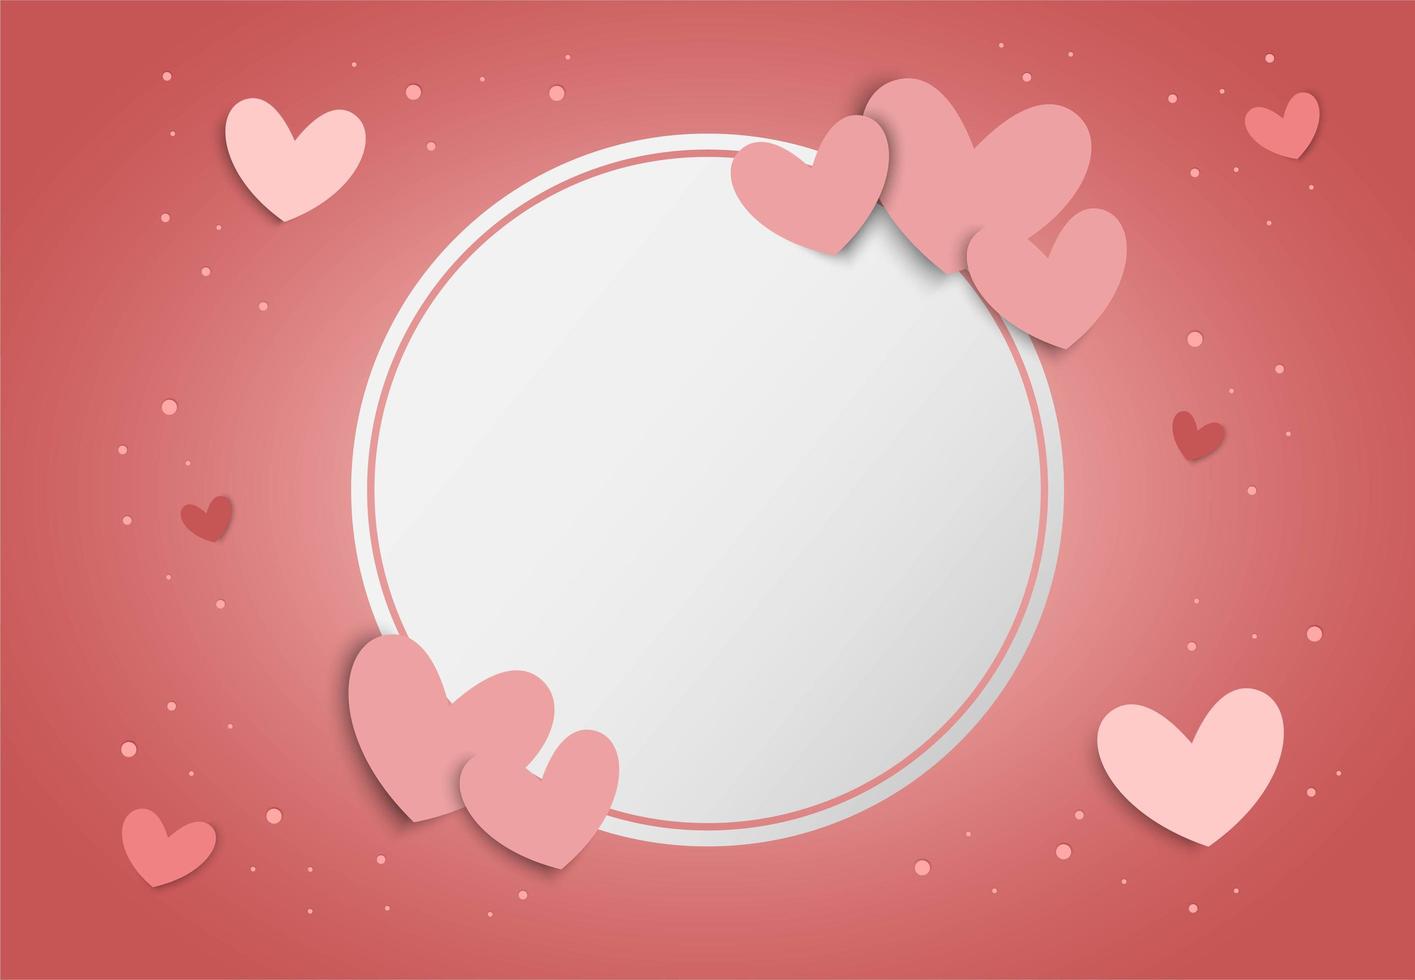 Fond de Saint Valentin avec coeurs roses et cadre de cercle blanc vierge vecteur